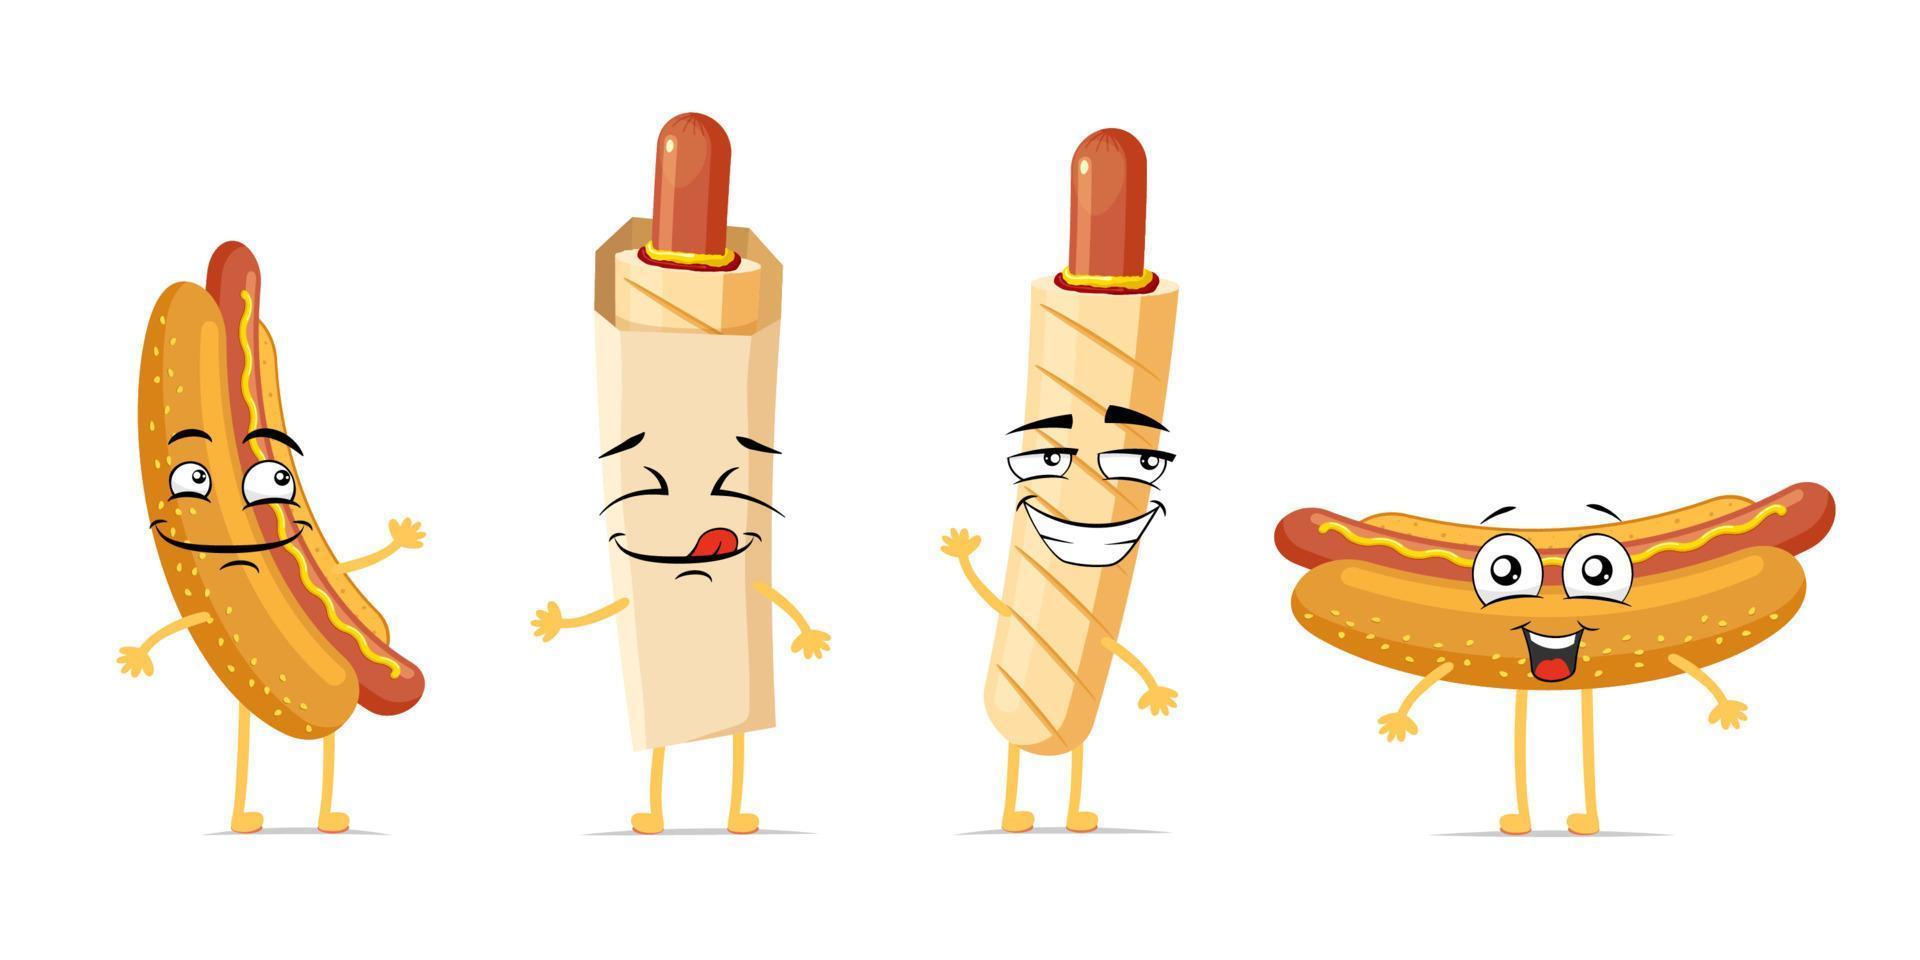 Hot Dog lustig lächelnd Cartoon-Zeichensatz. gekochte französische wurst in brötchen niedliche glückliche gesichtsausdruck-maskottchensammlung. verschiedene Fast-Food-freudige Comic-Emoticons-Vektor-Eps-Illustration vektor